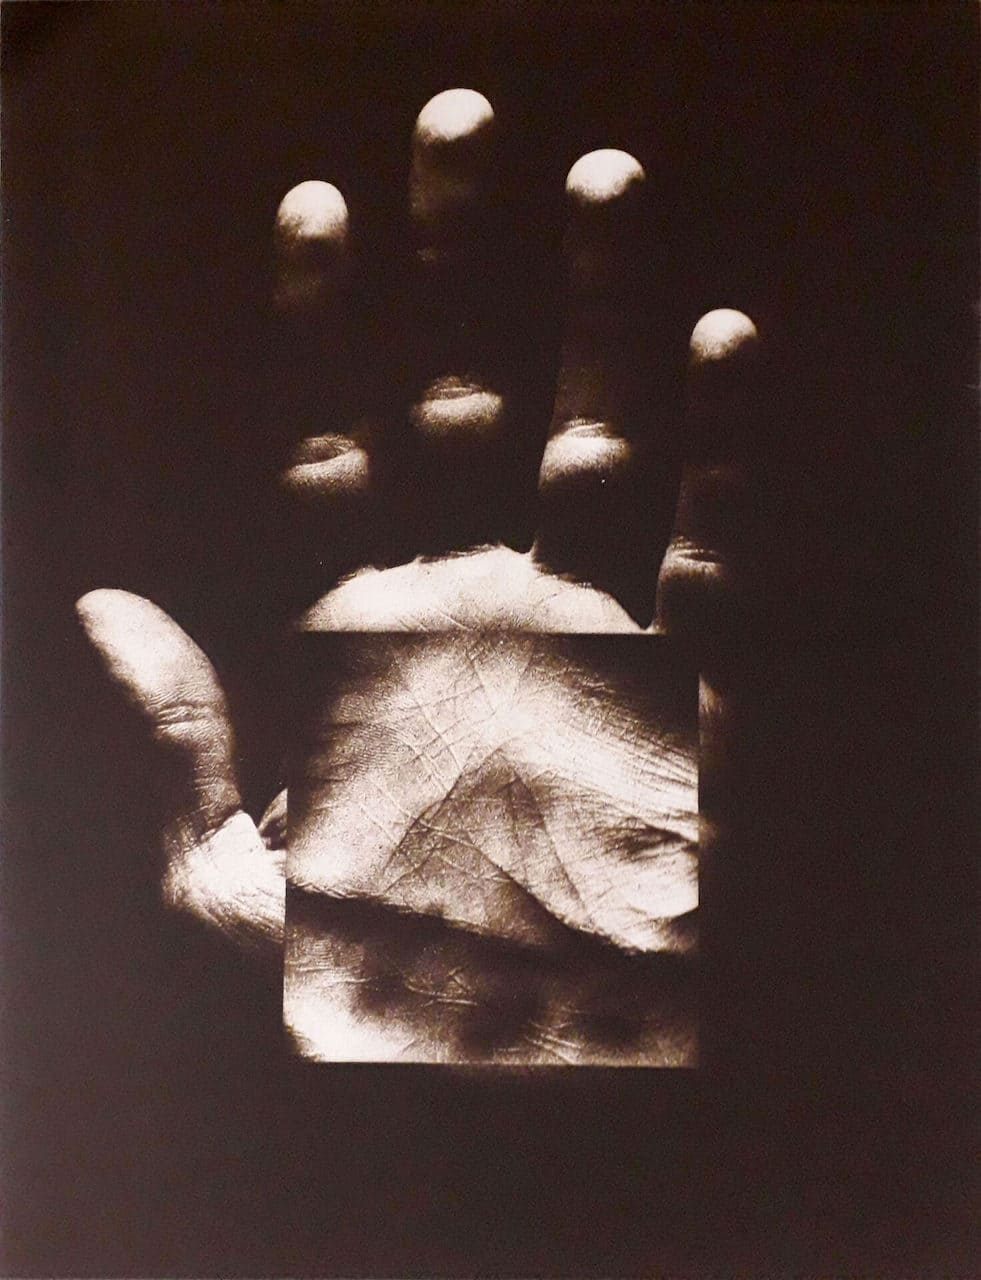 Bruno Di Bello, “Progetto d’intervento sul mio destino n. 8”, 1975, fotografia su tela fotosensibile virata seppia, 120x90 cm